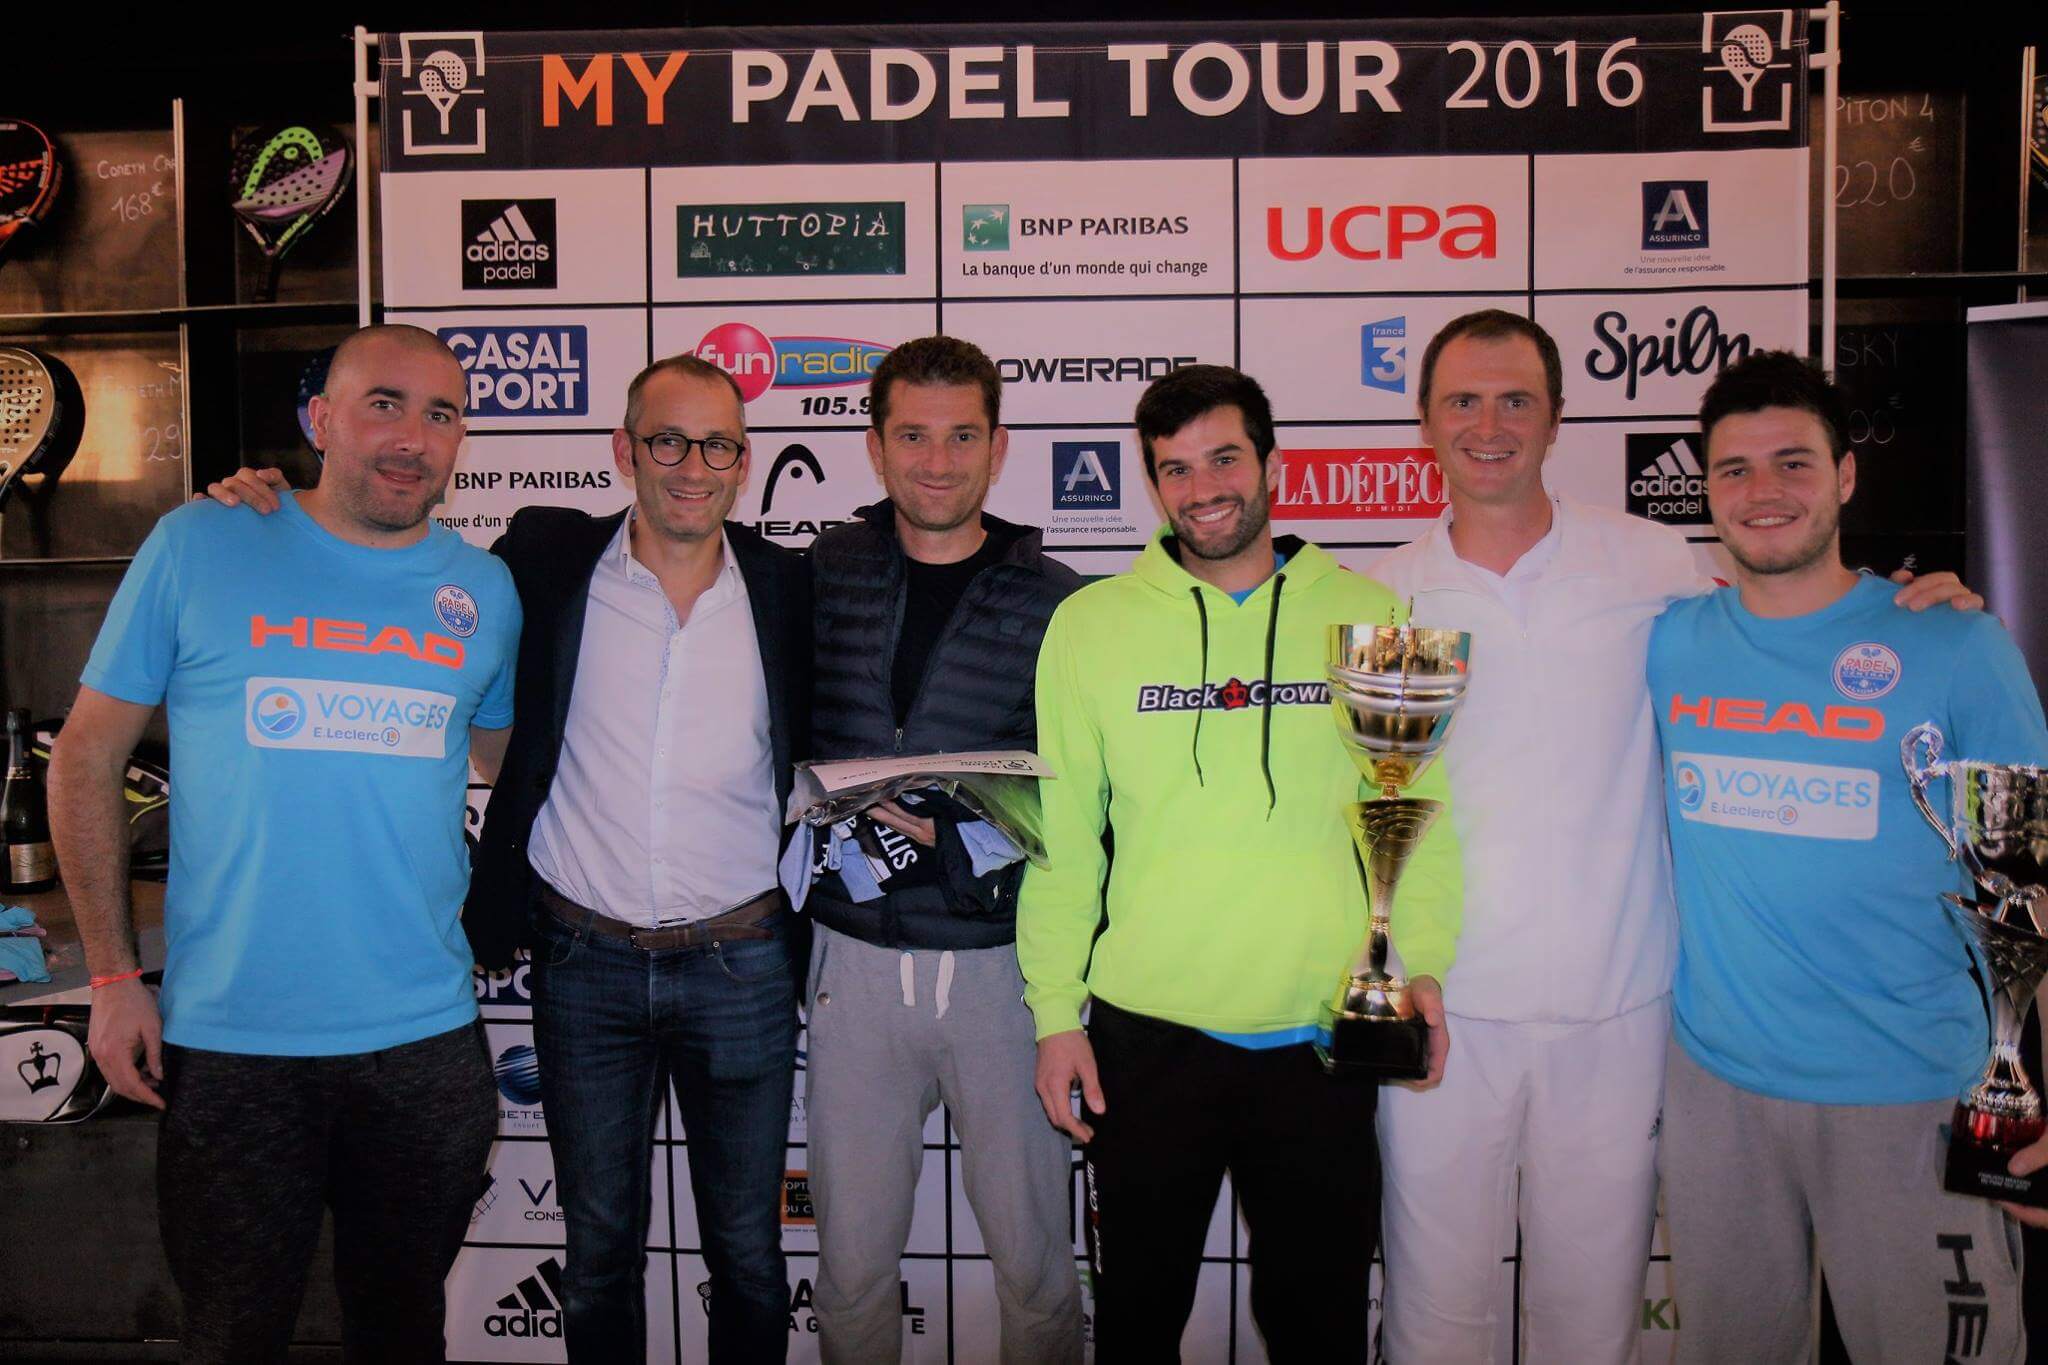 Ferrandez / Gauthier e Vandaele / Godallier vincono al My Padel 2016 Tour